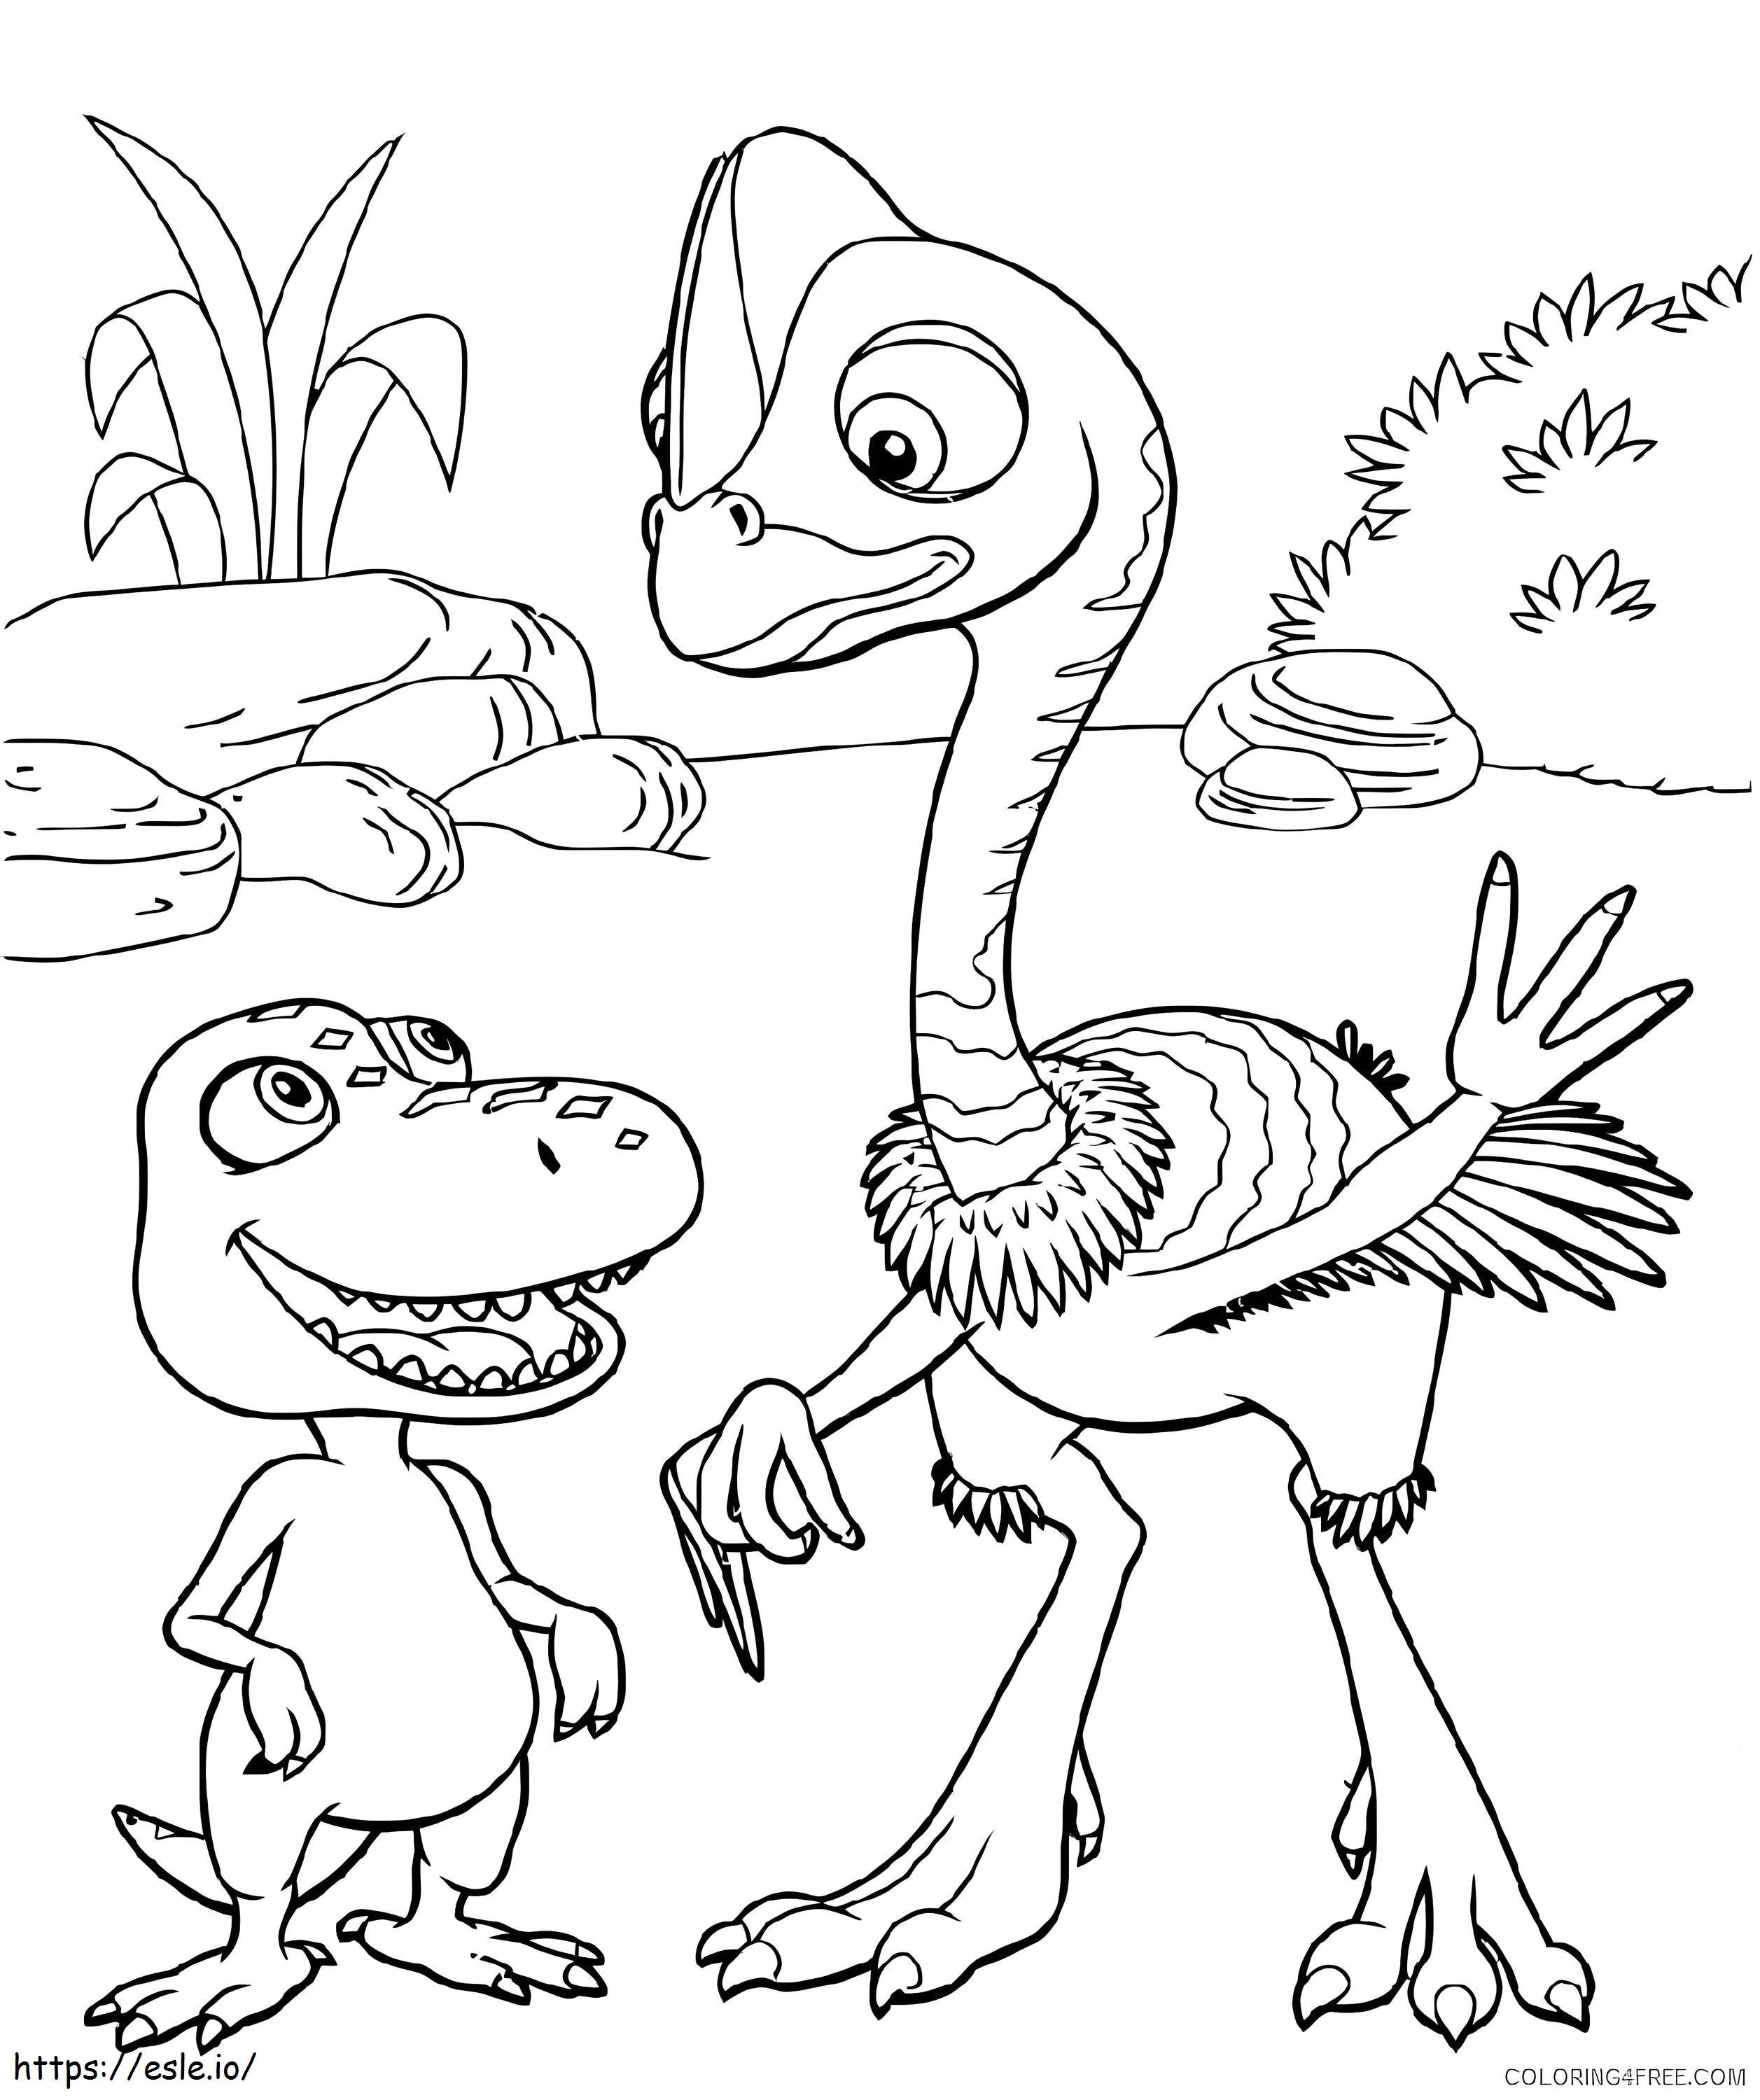 Dinosauro e amico da colorare